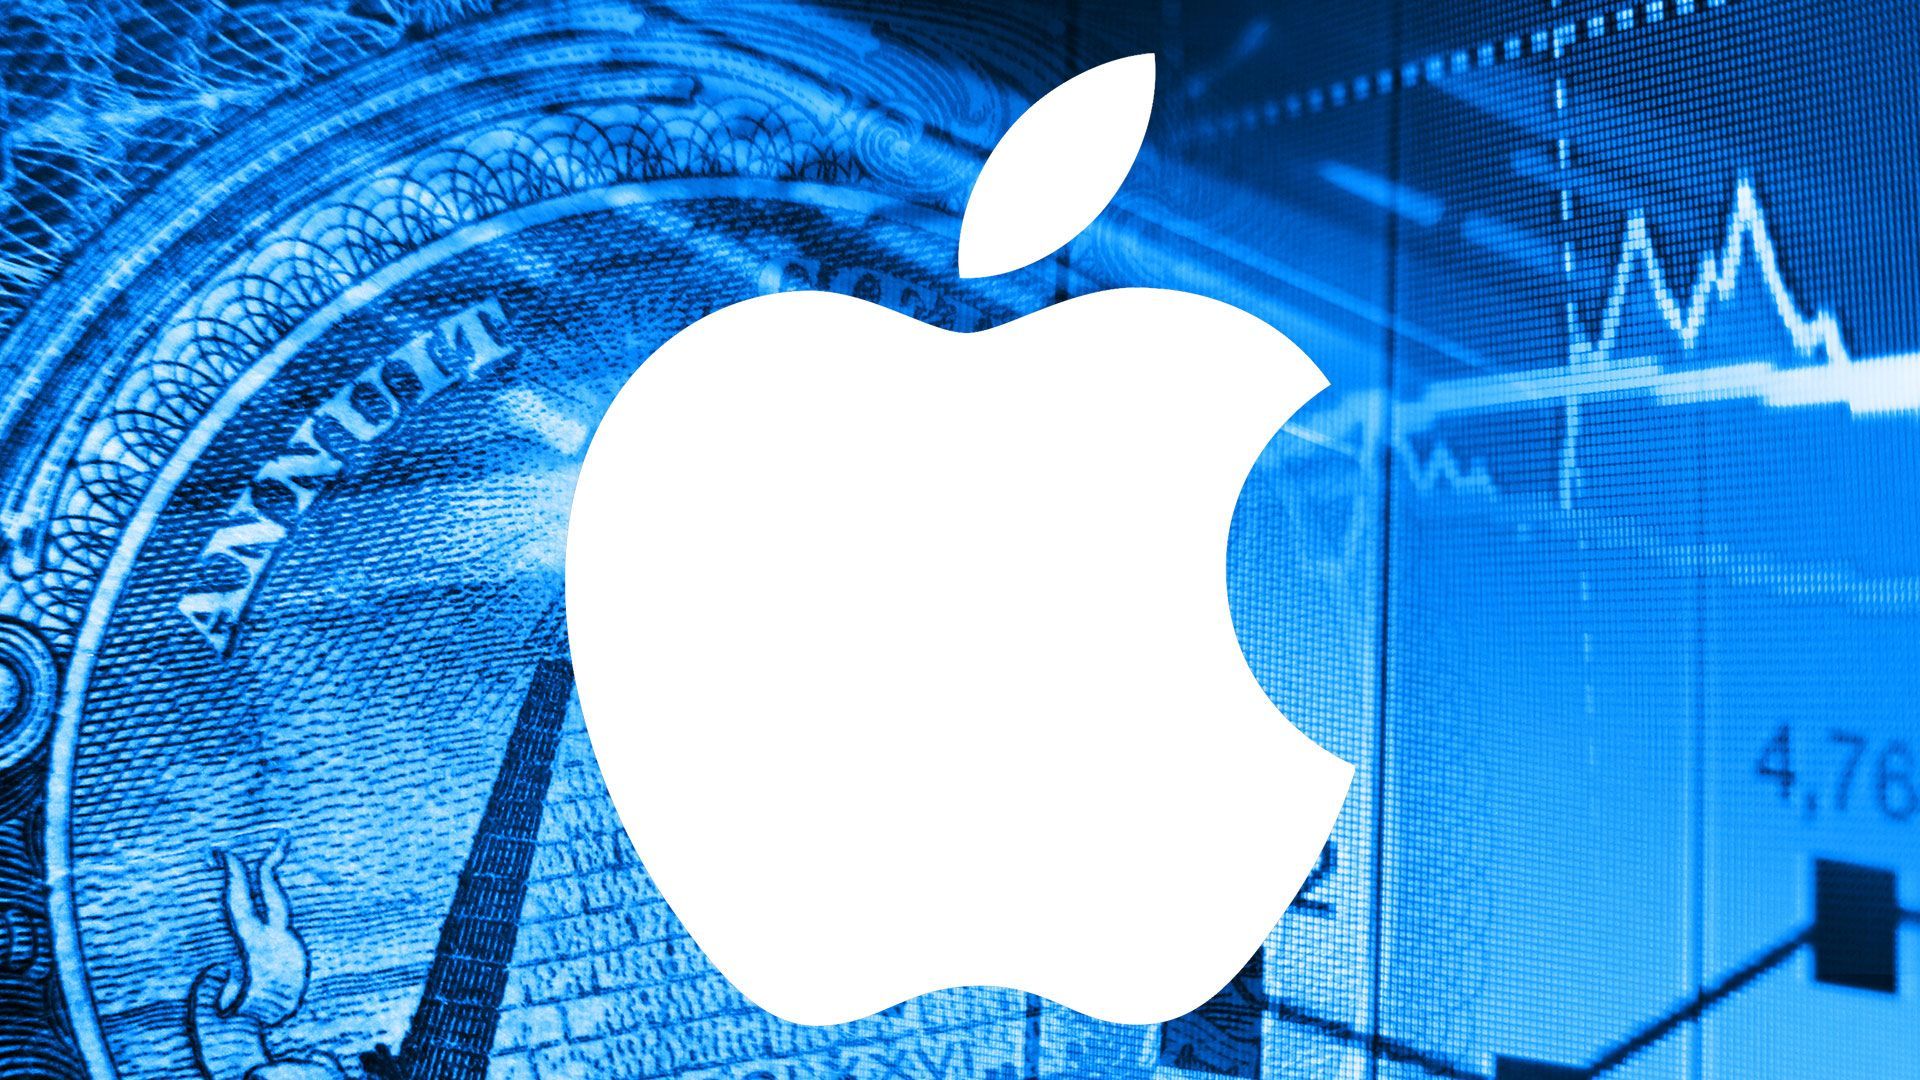 Финансовый холдинг UBS понизил рейтинг Apple из-за опасений по поводу темпов экономического роста компании